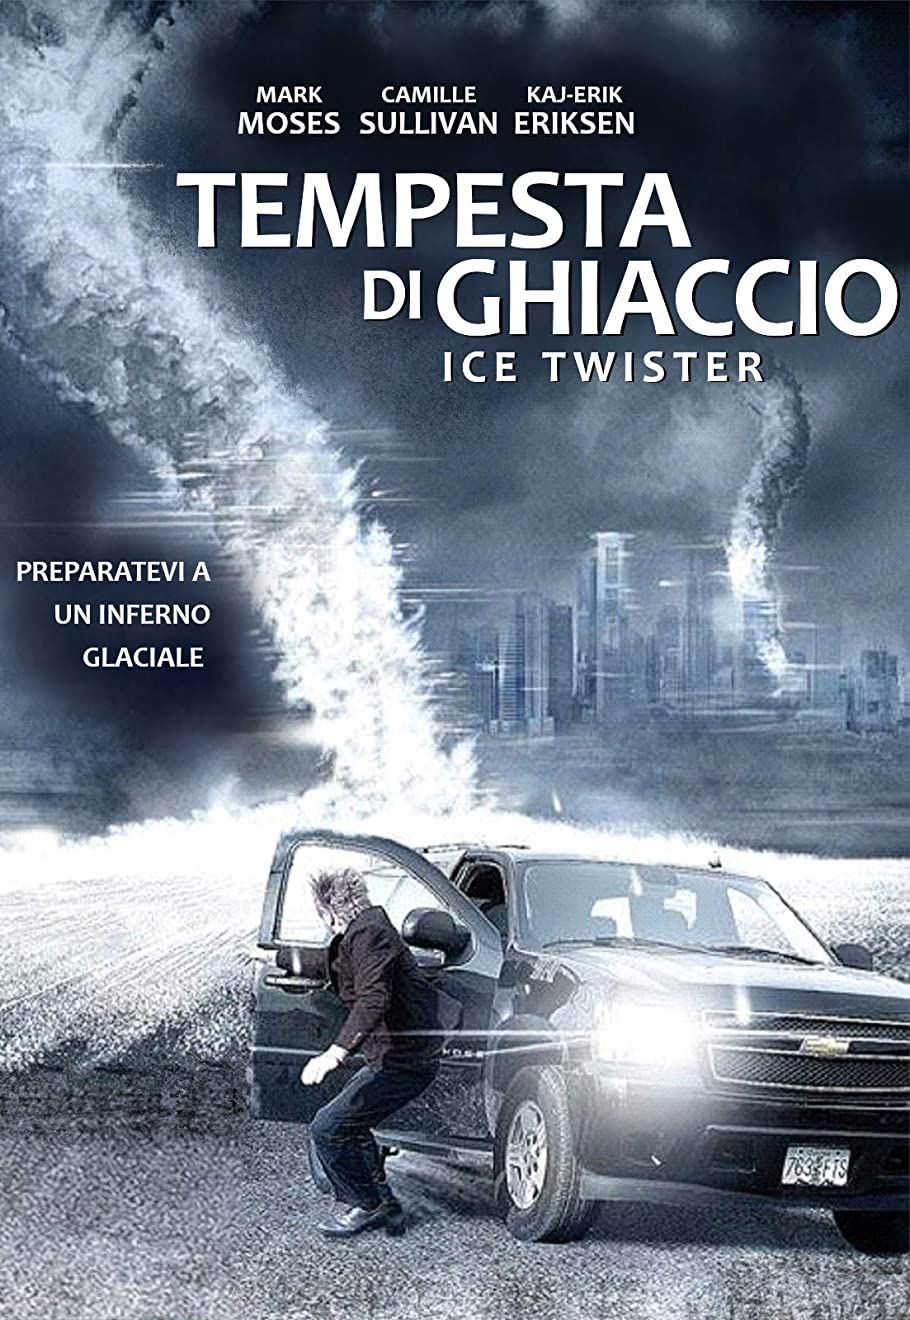 Tempesta di ghiaccio [HD] (2009)